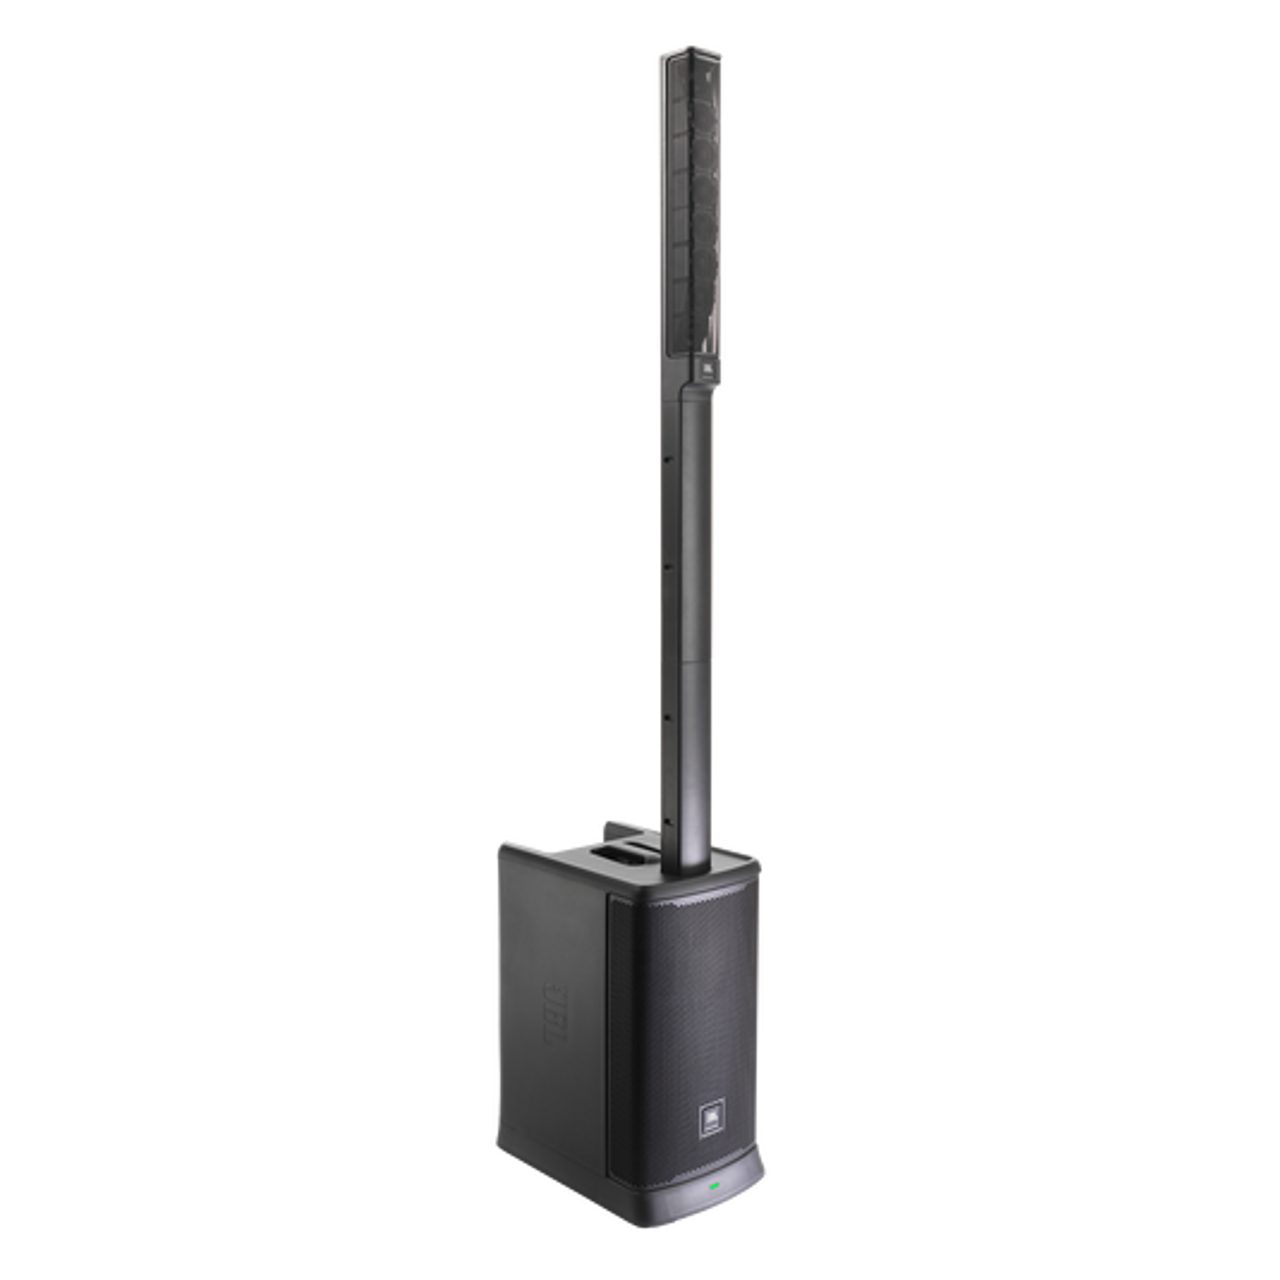 JBL JBL-EONONEMK2-NA Battery Powered Column Speaker